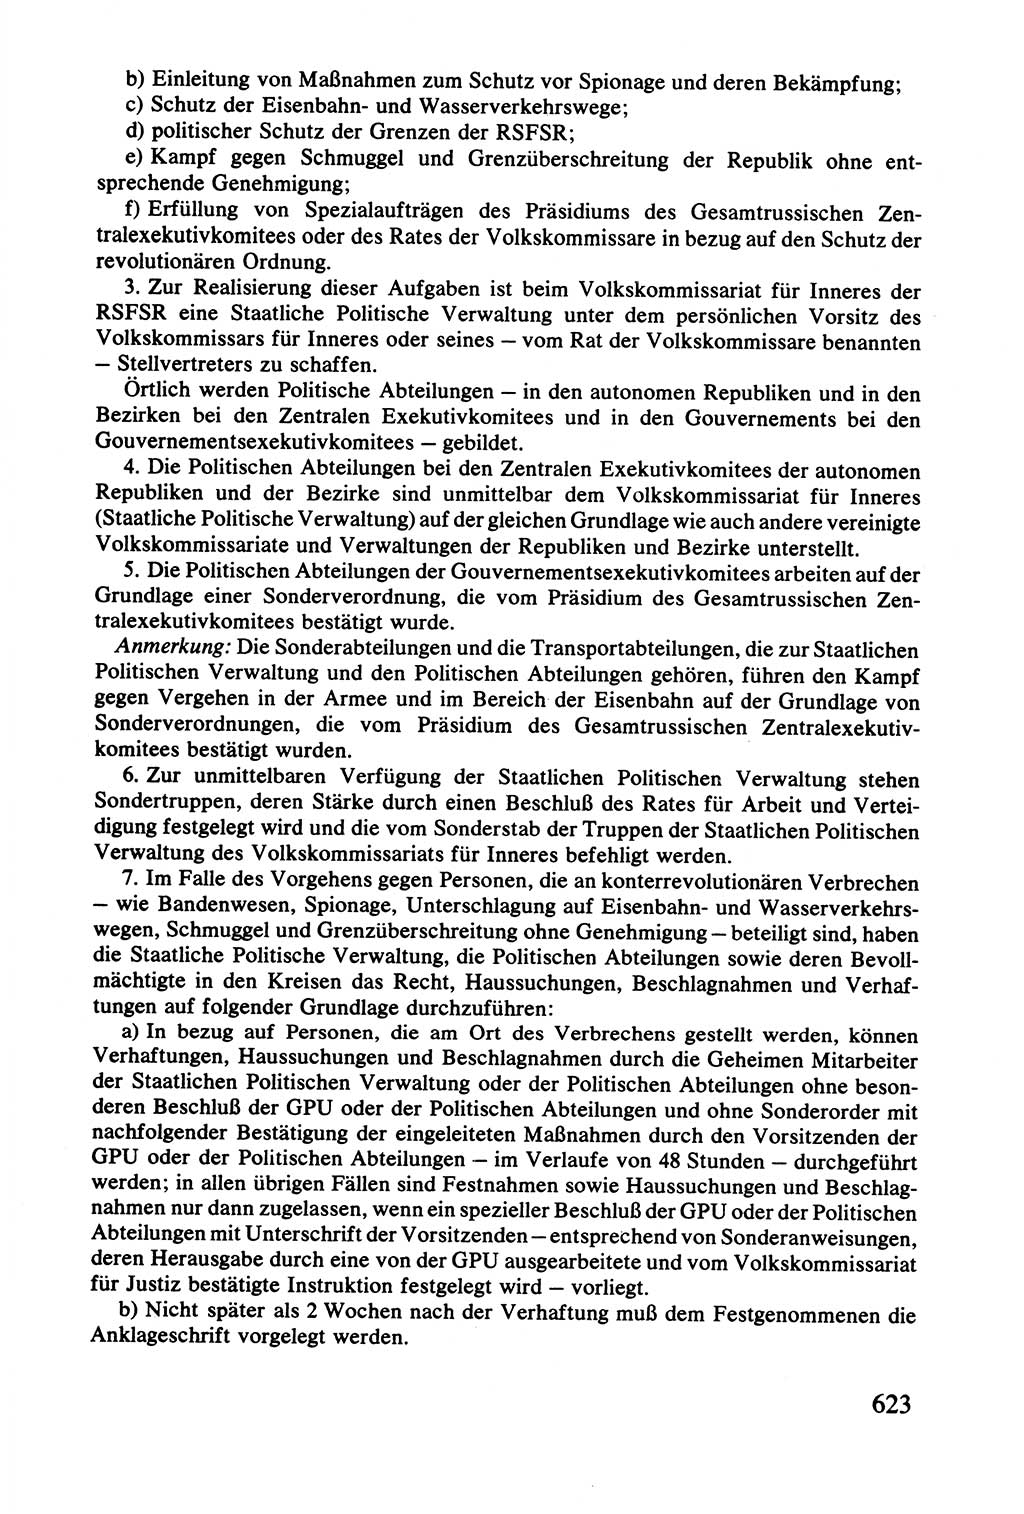 Lenin und die Gesamtrussische Tscheka, Dokumentensammlung, Ministerium für Staatssicherheit (MfS) [Deutsche Demokratische Republik (DDR)], Juristische Hochschule (JHS) Potsdam 1977, Seite 623 (Tscheka Dok. MfS DDR 1977, S. 623)